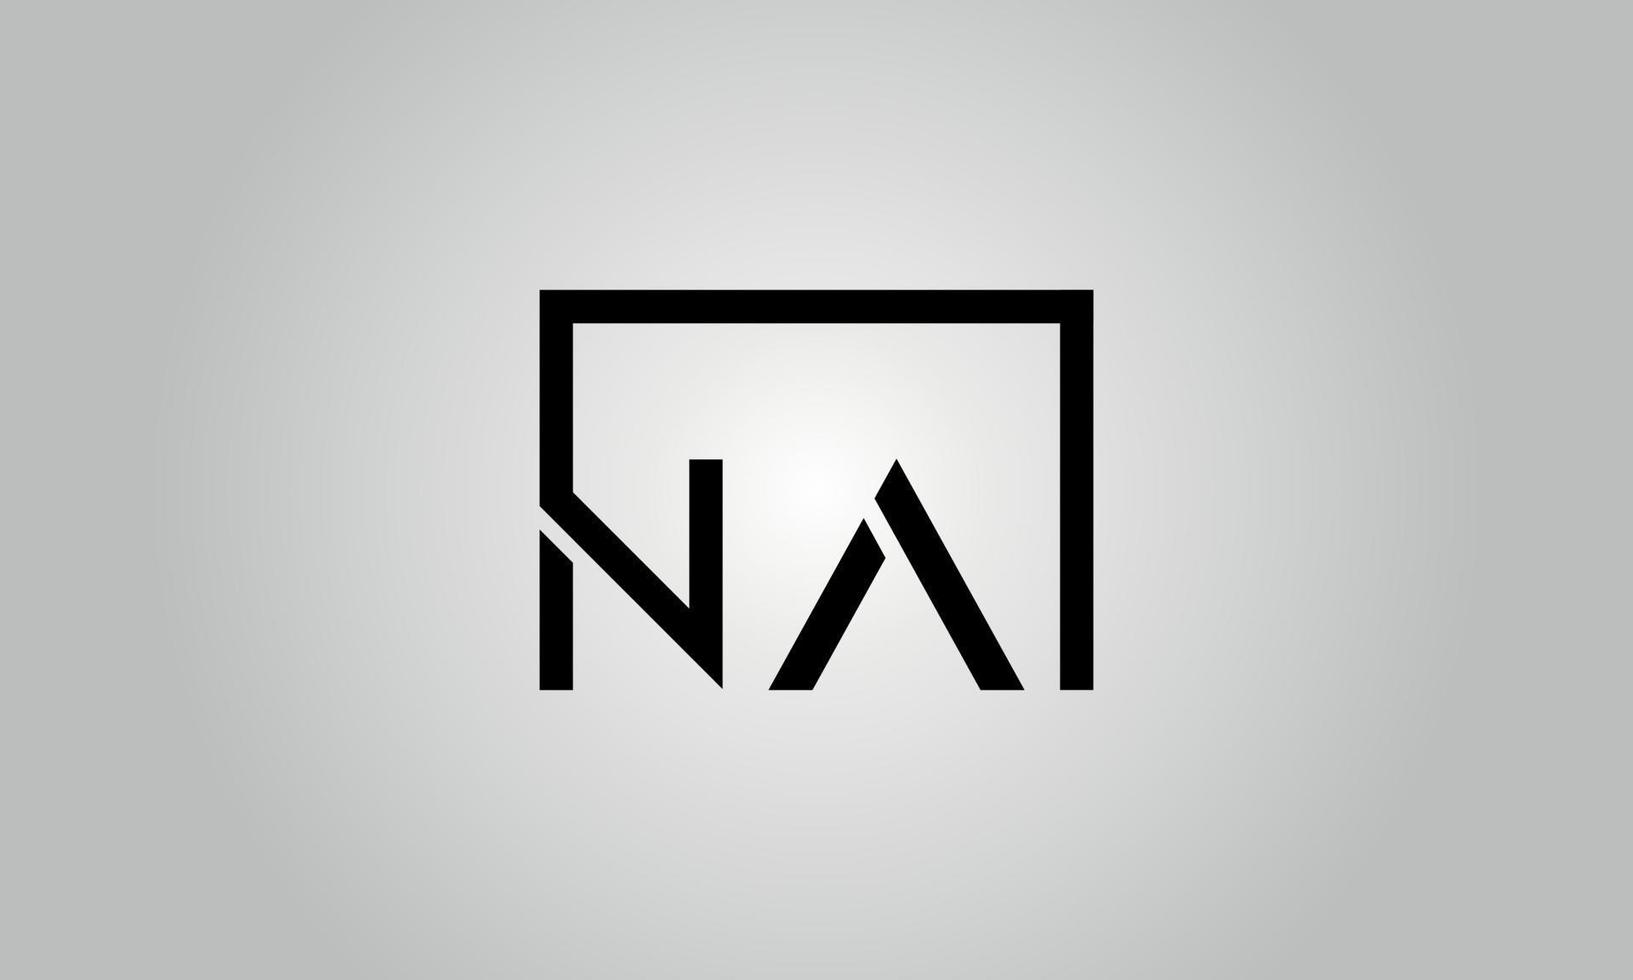 création de logo lettre na. logo na avec forme carrée dans le modèle de vecteur gratuit de vecteur de couleurs noires.